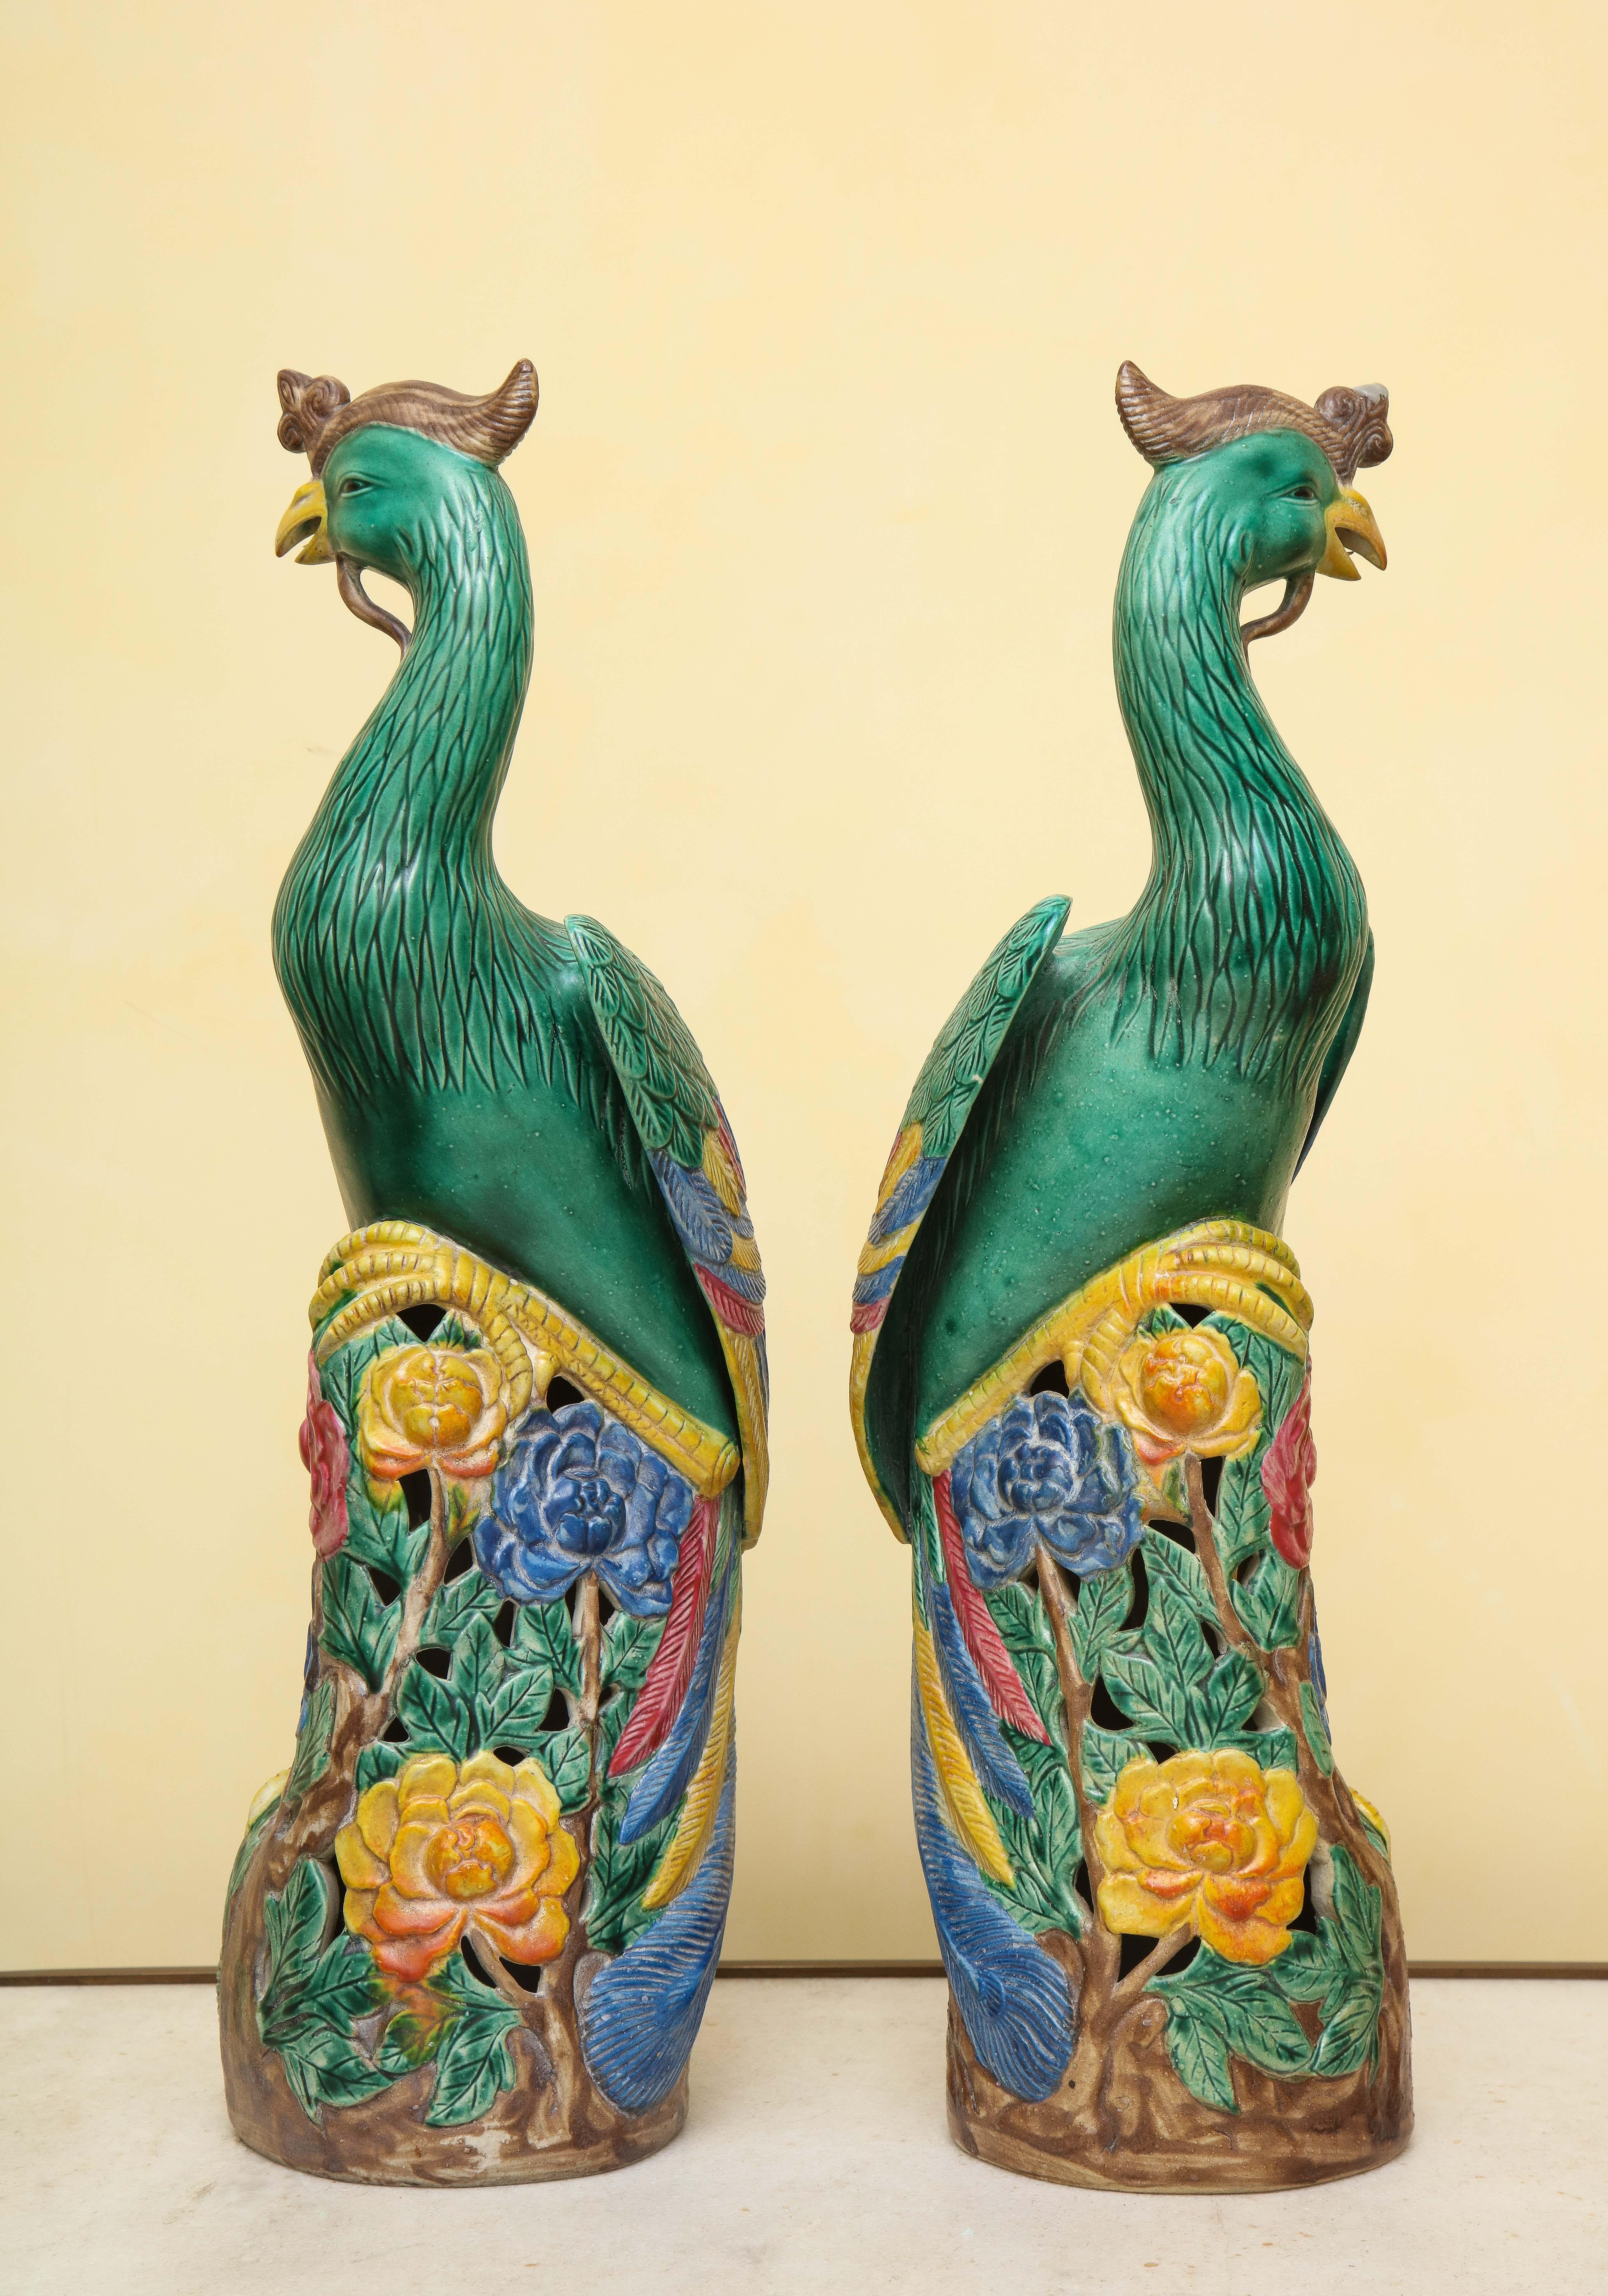 Vernissé Paire d'oiseaux Phoenix en porcelaine chinoise de style export Ho-Ho